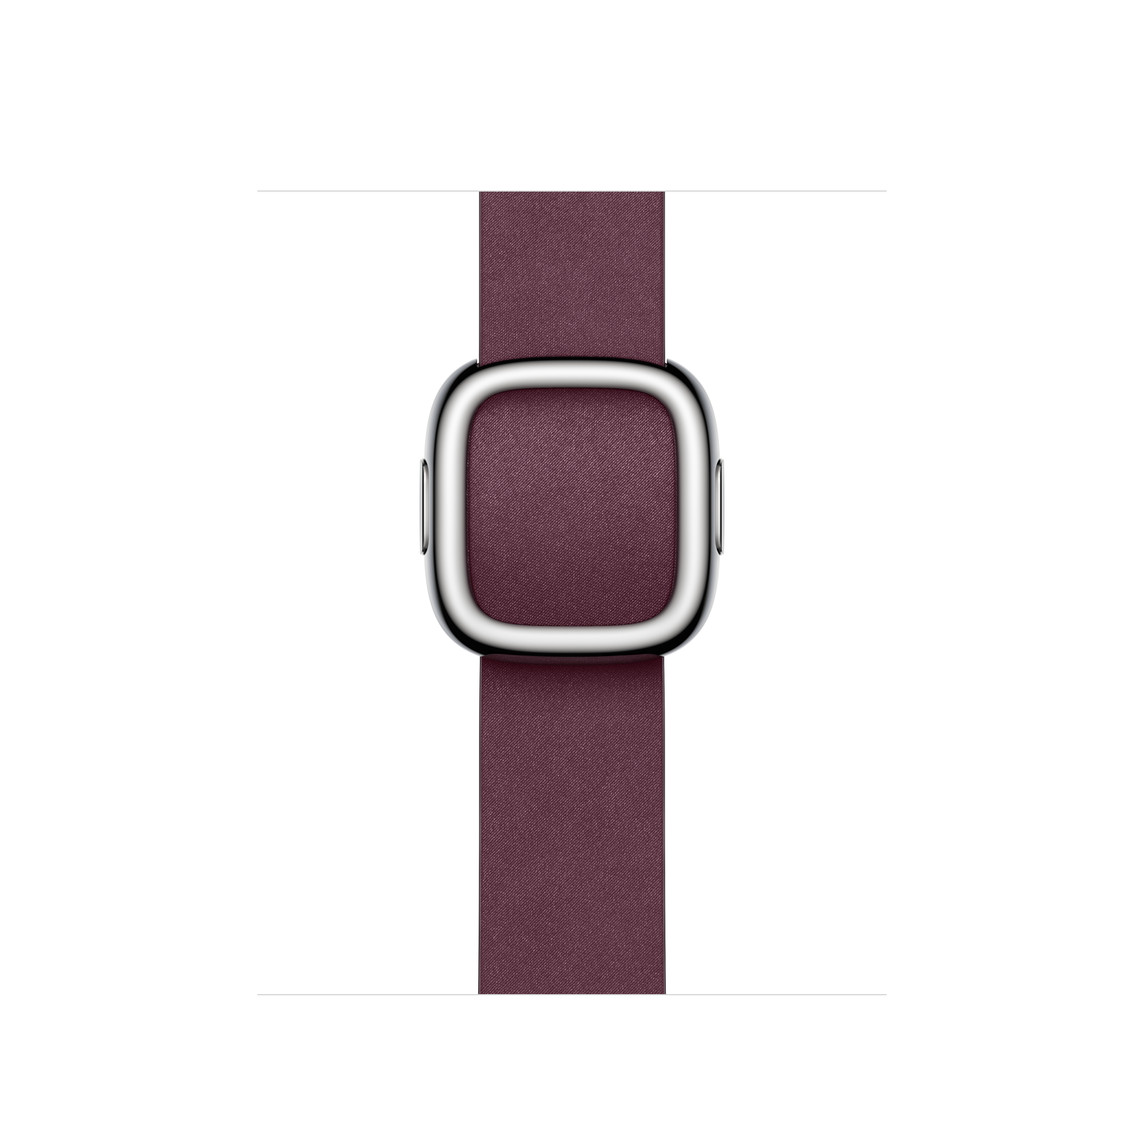 桑椹色 (酒紅色) 時尚圈扣錶帶配磁力不鏽鋼錶扣